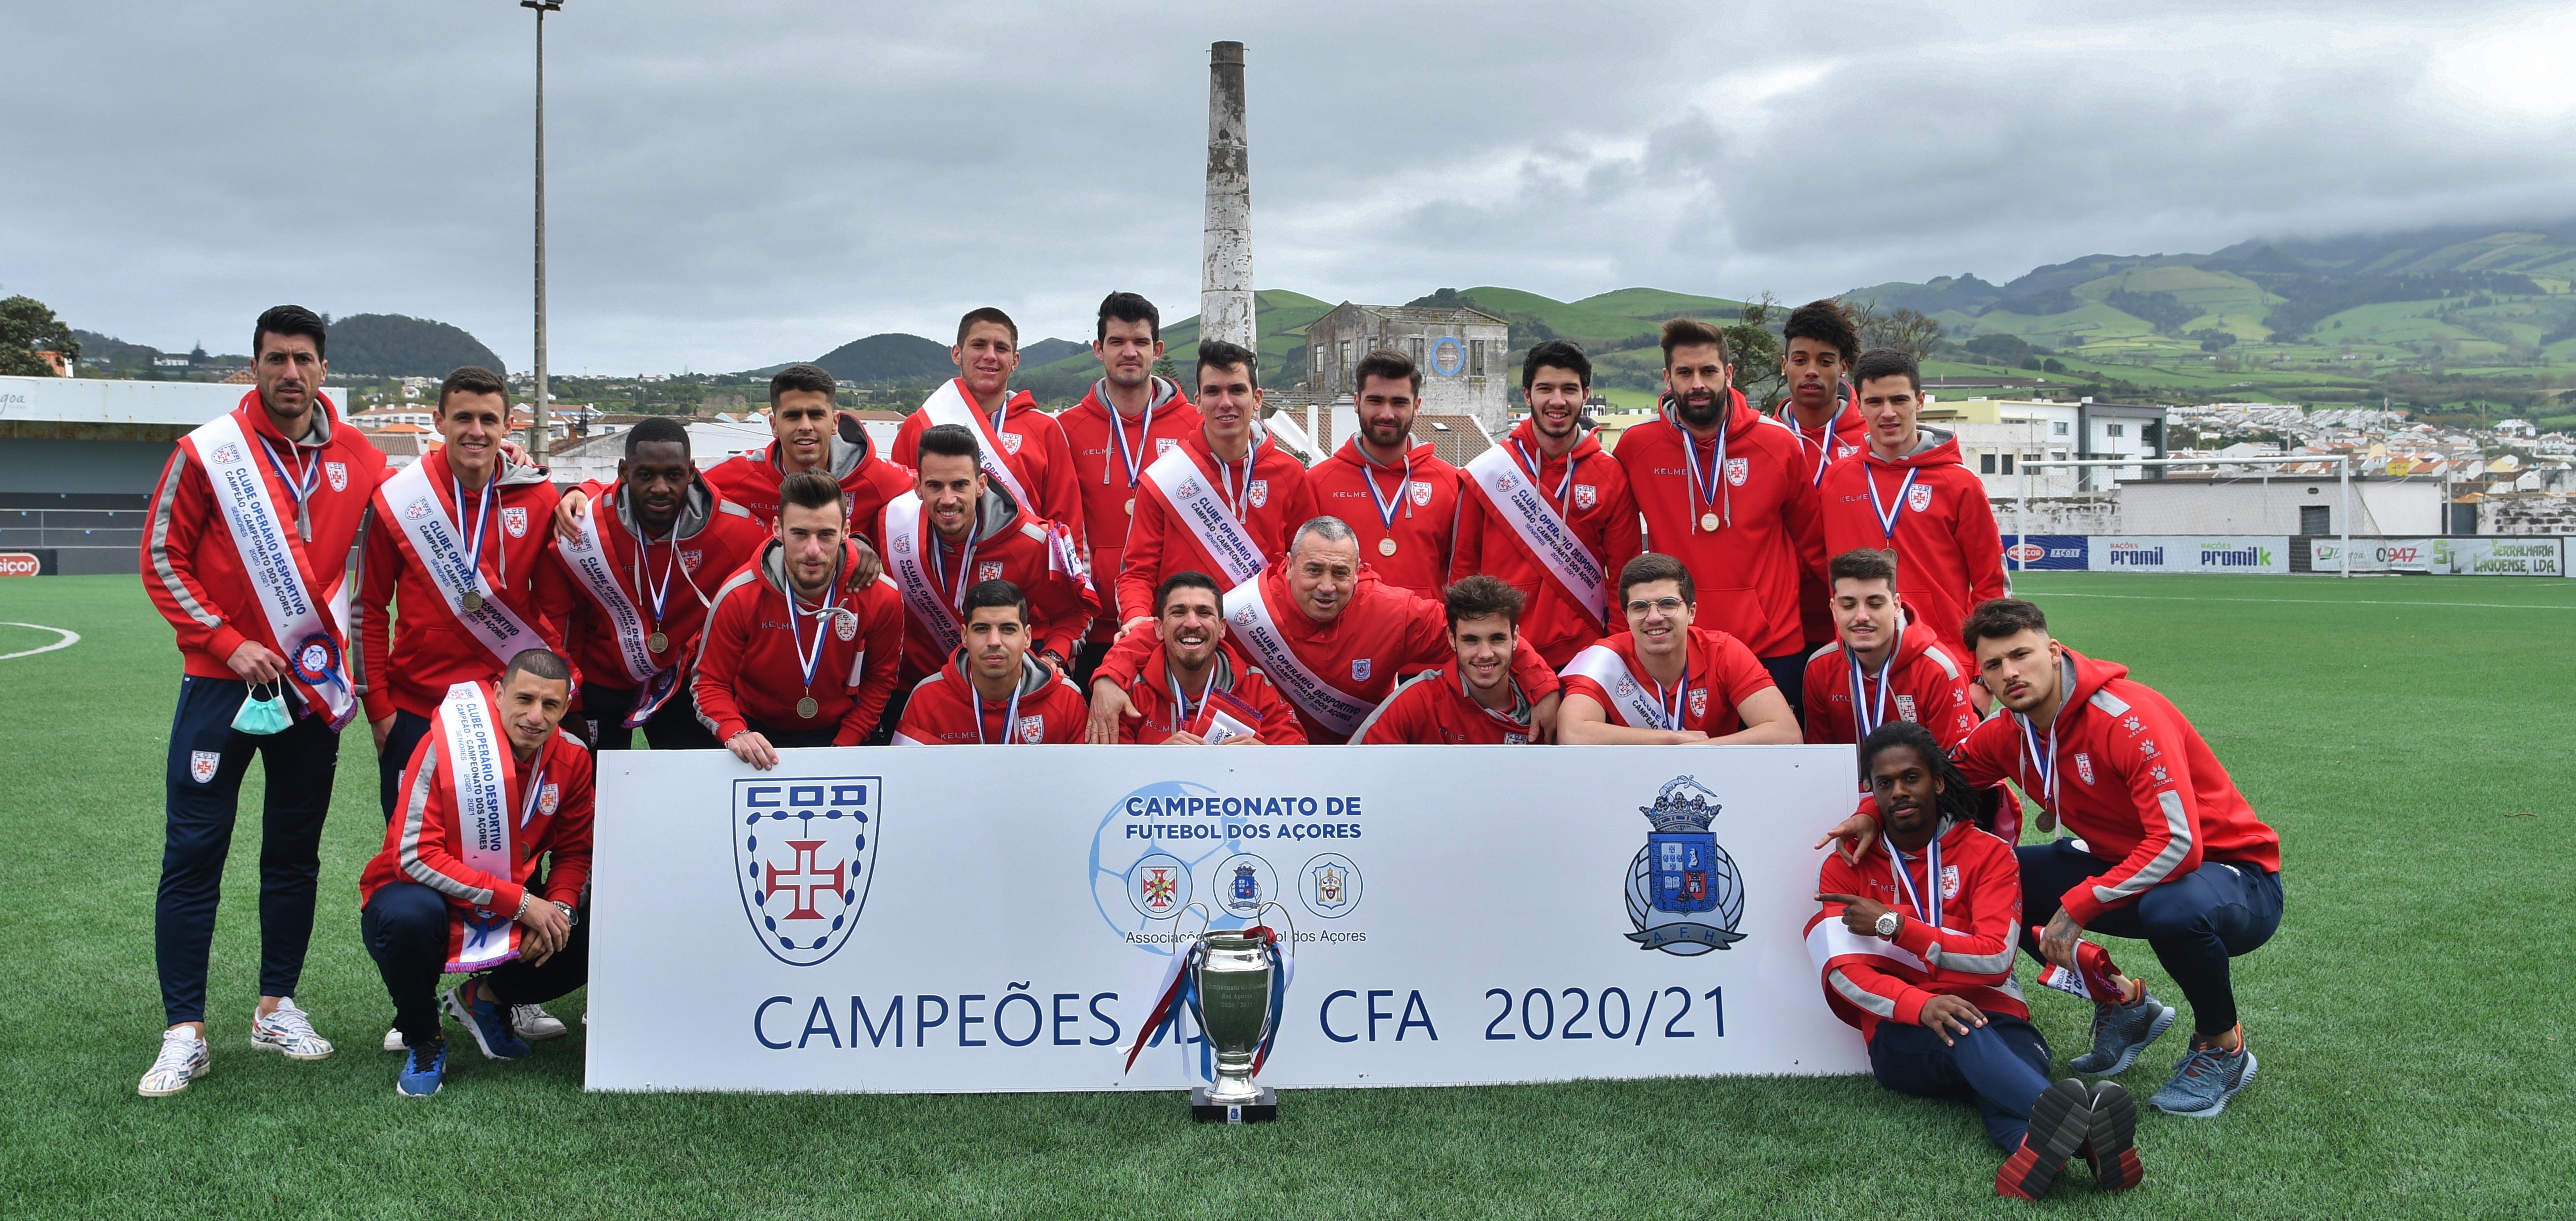 Campeonato de Futebol dos Açores - Época de 2020/2021